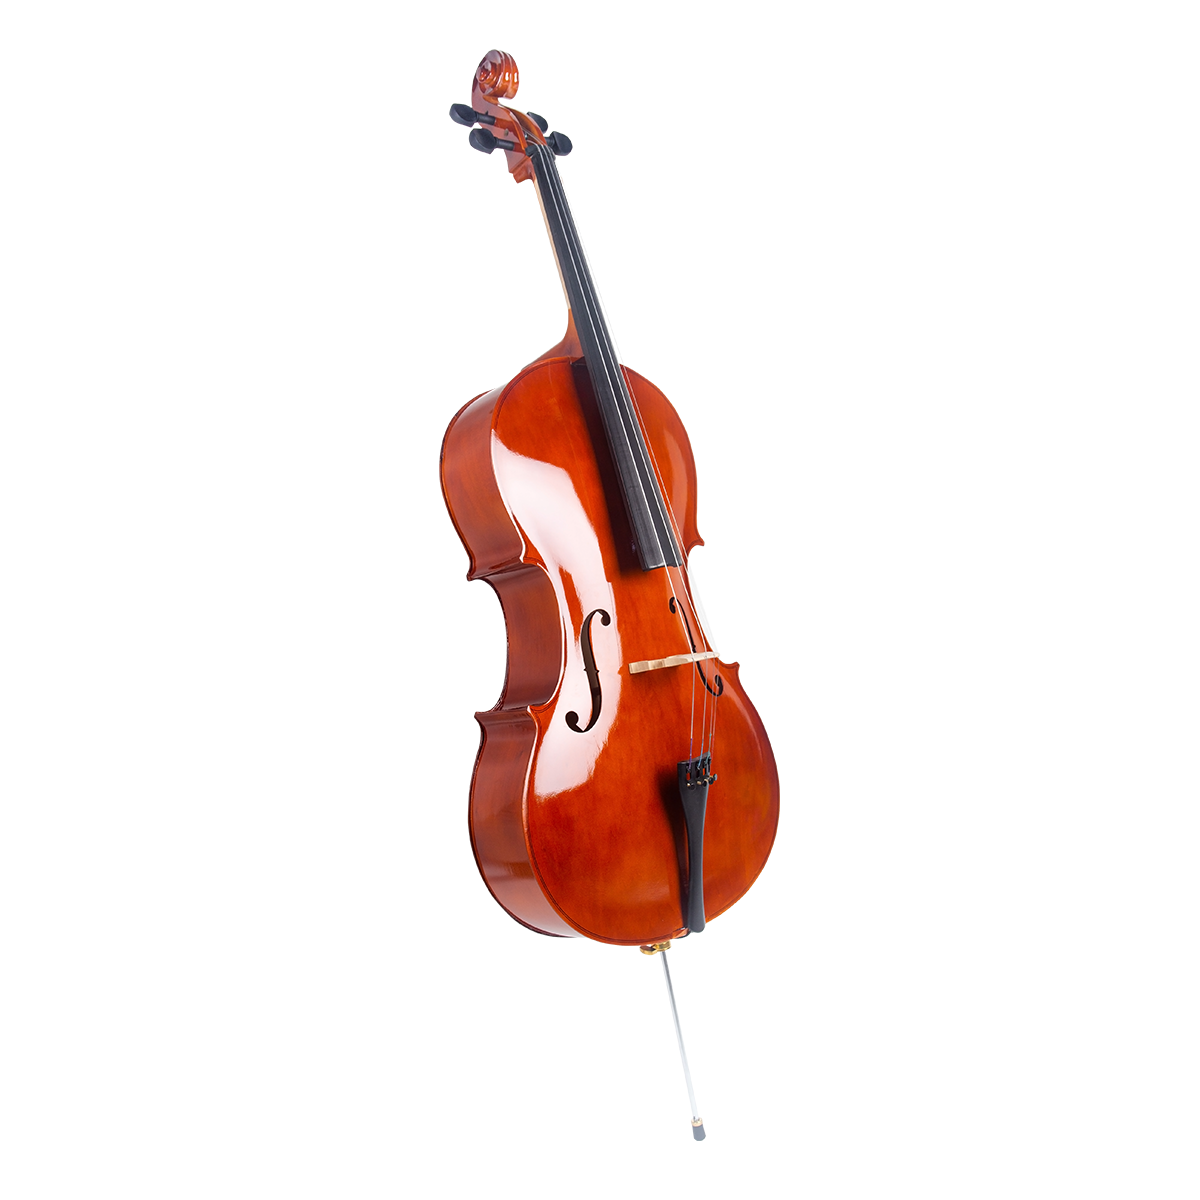 cello akustik mandalika 4/4 biola besar bonus hardcase fullset